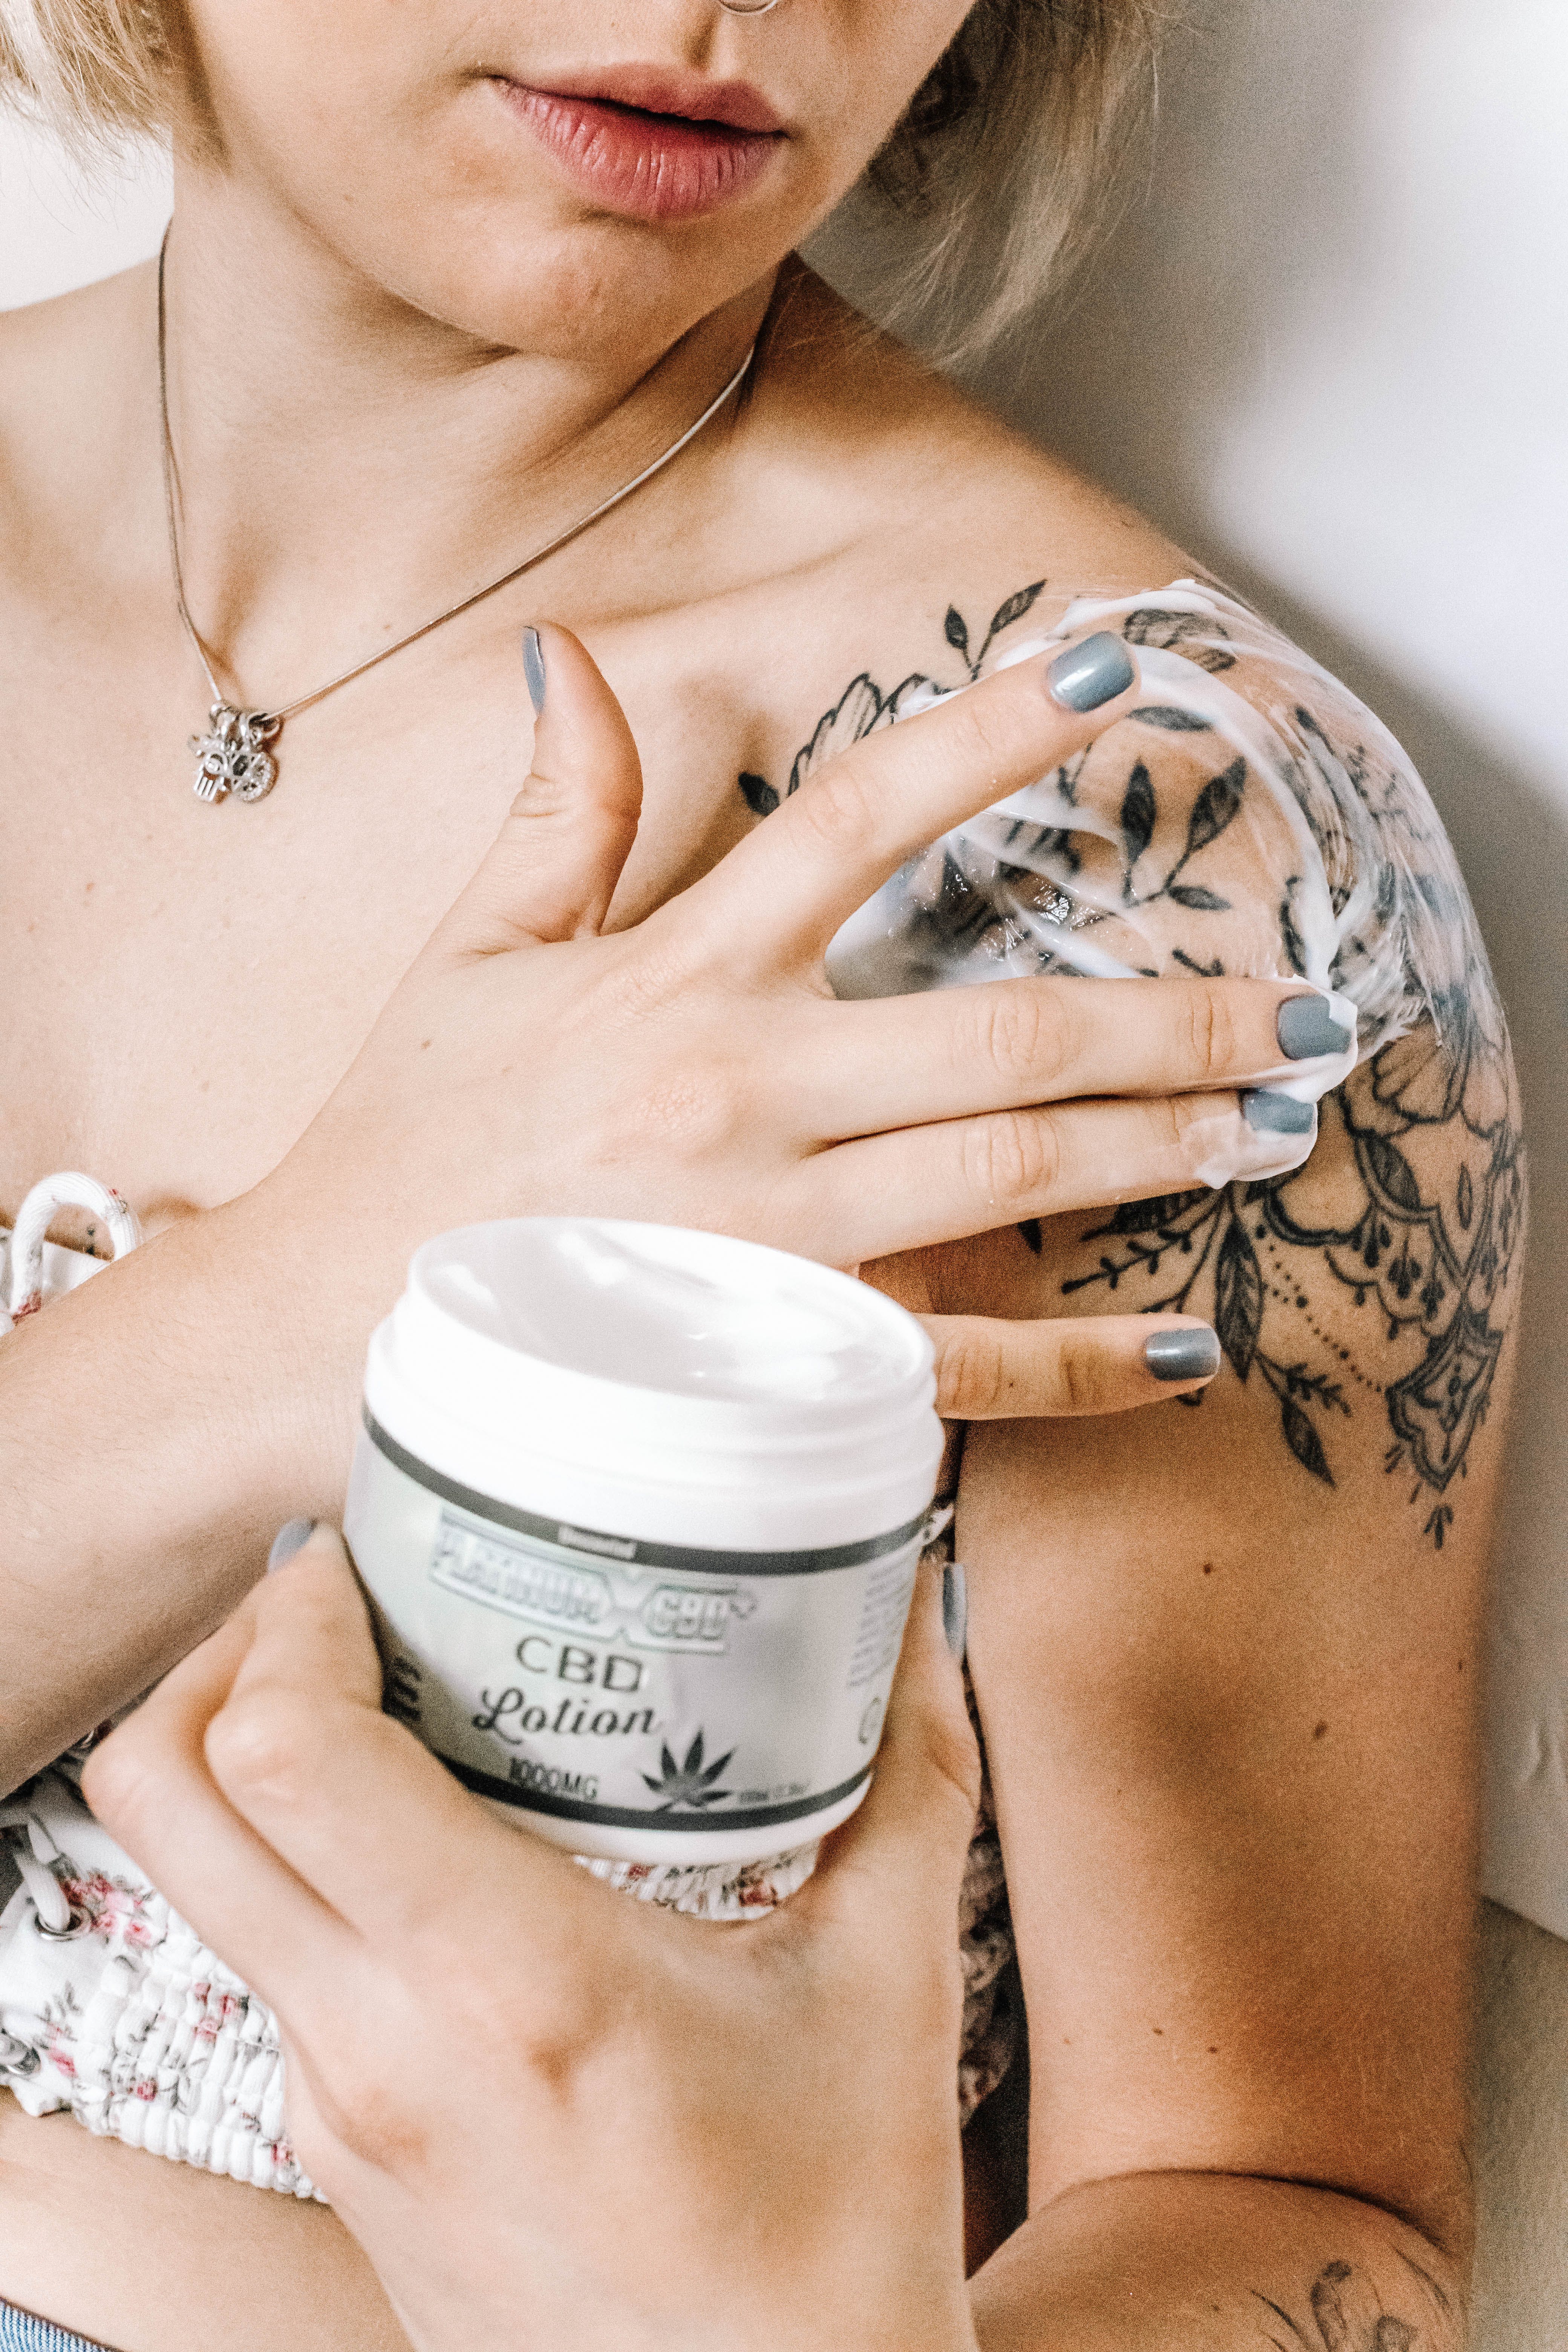 Une femme prenant soin d'un nouveau tatouage | Source : Pexels